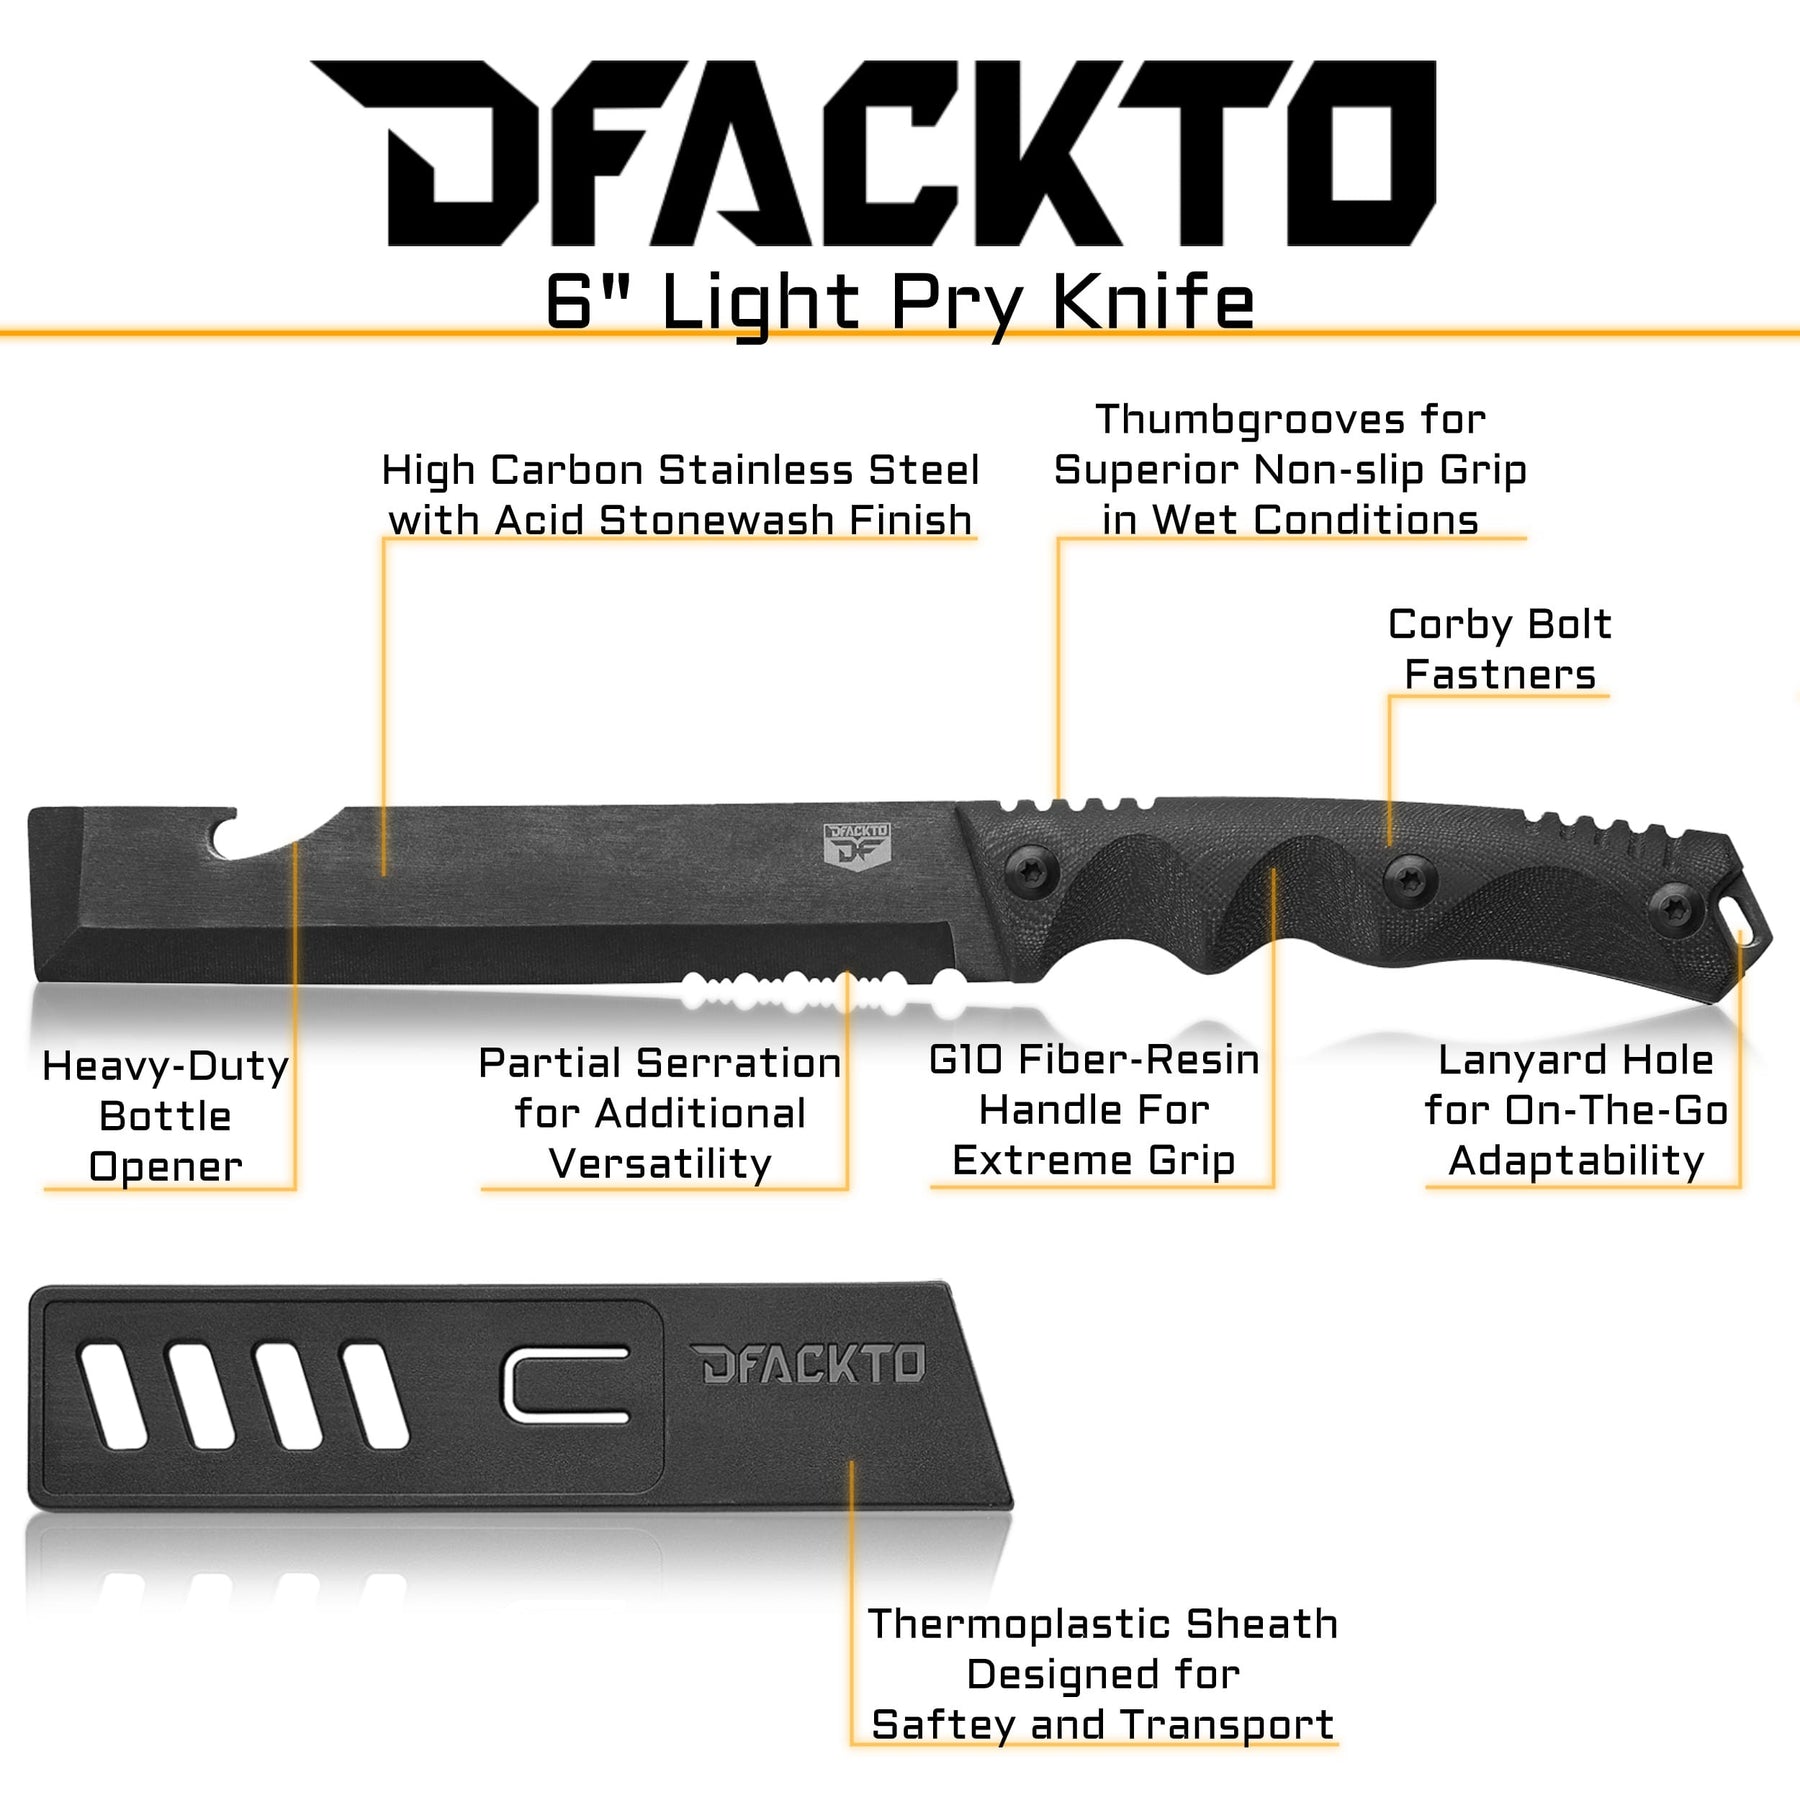 6" Light Pry Knife